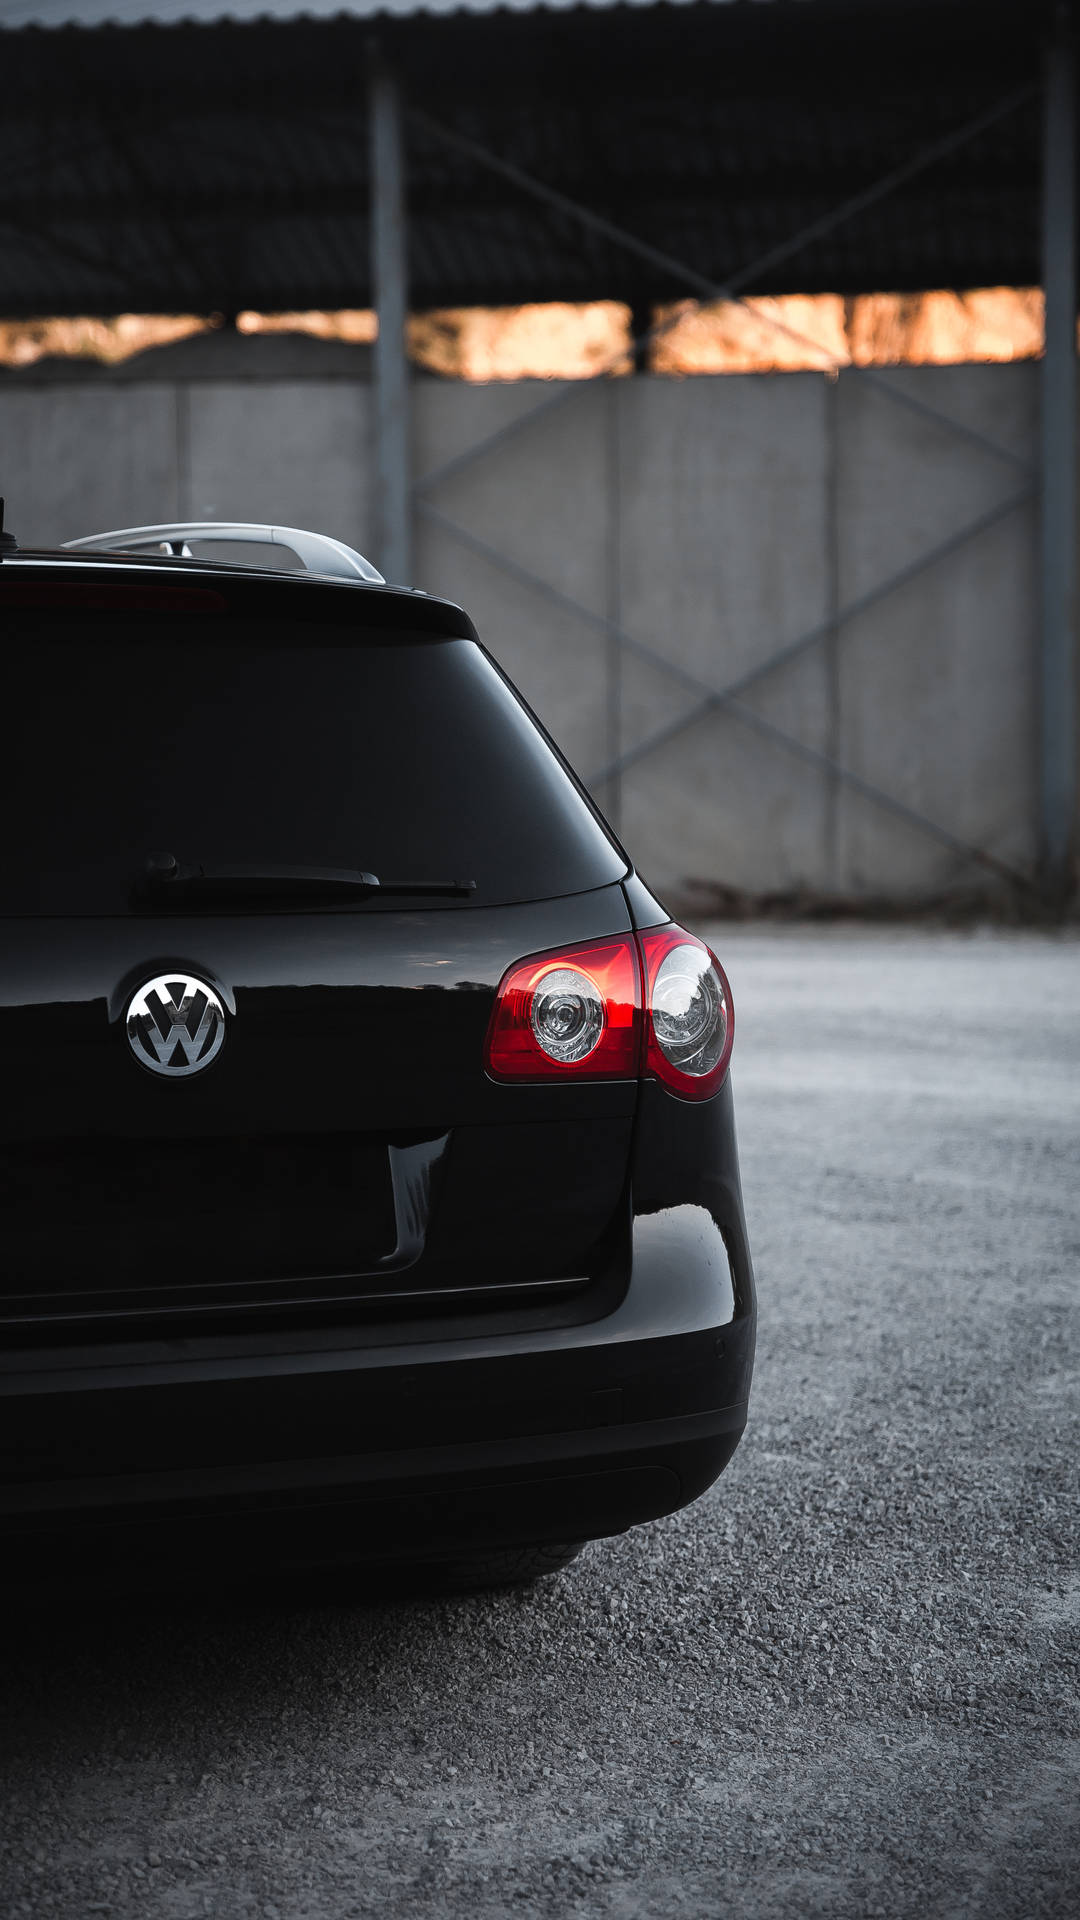 Volkswagen Golf V, Volkswagen, Car, Headlight, Rear View